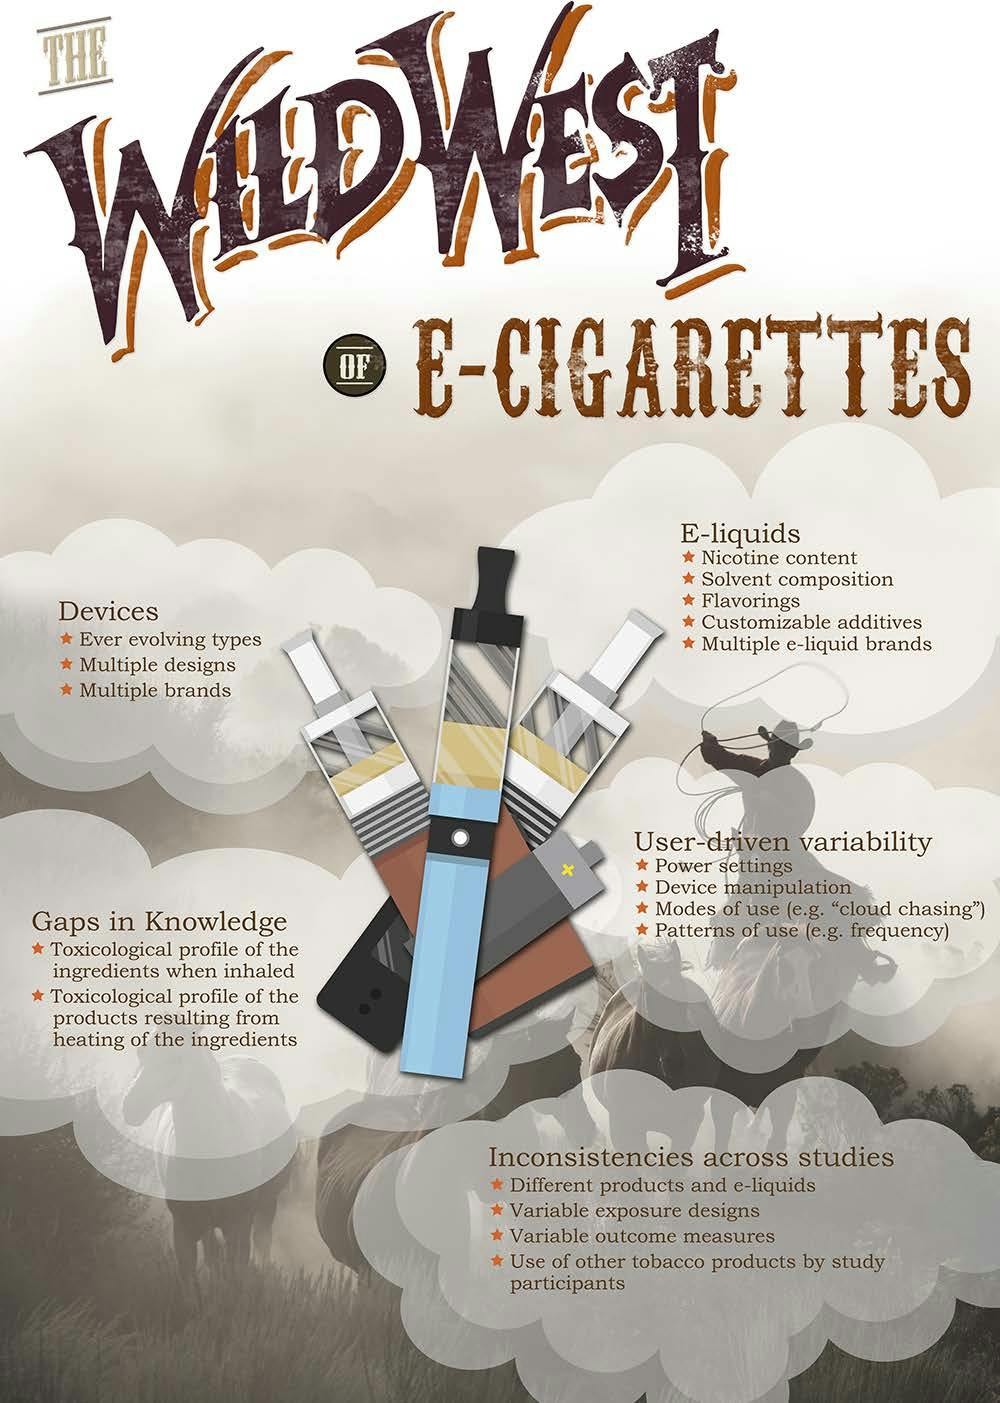 the wild west of e-cigarettes